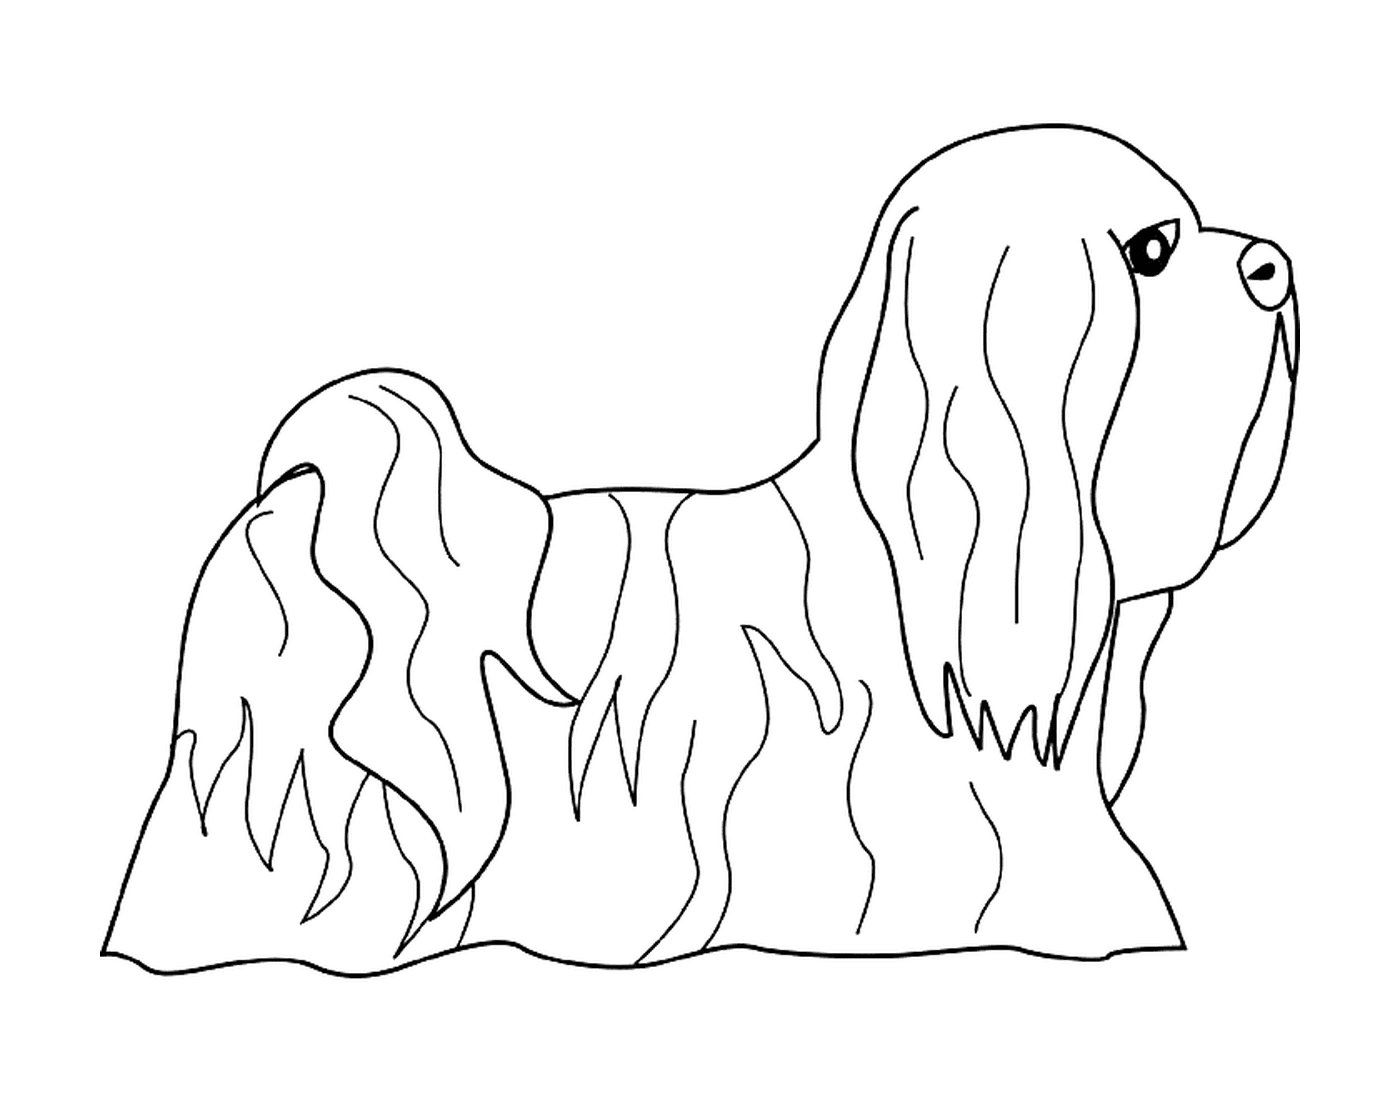   Un chien lhasa apso 